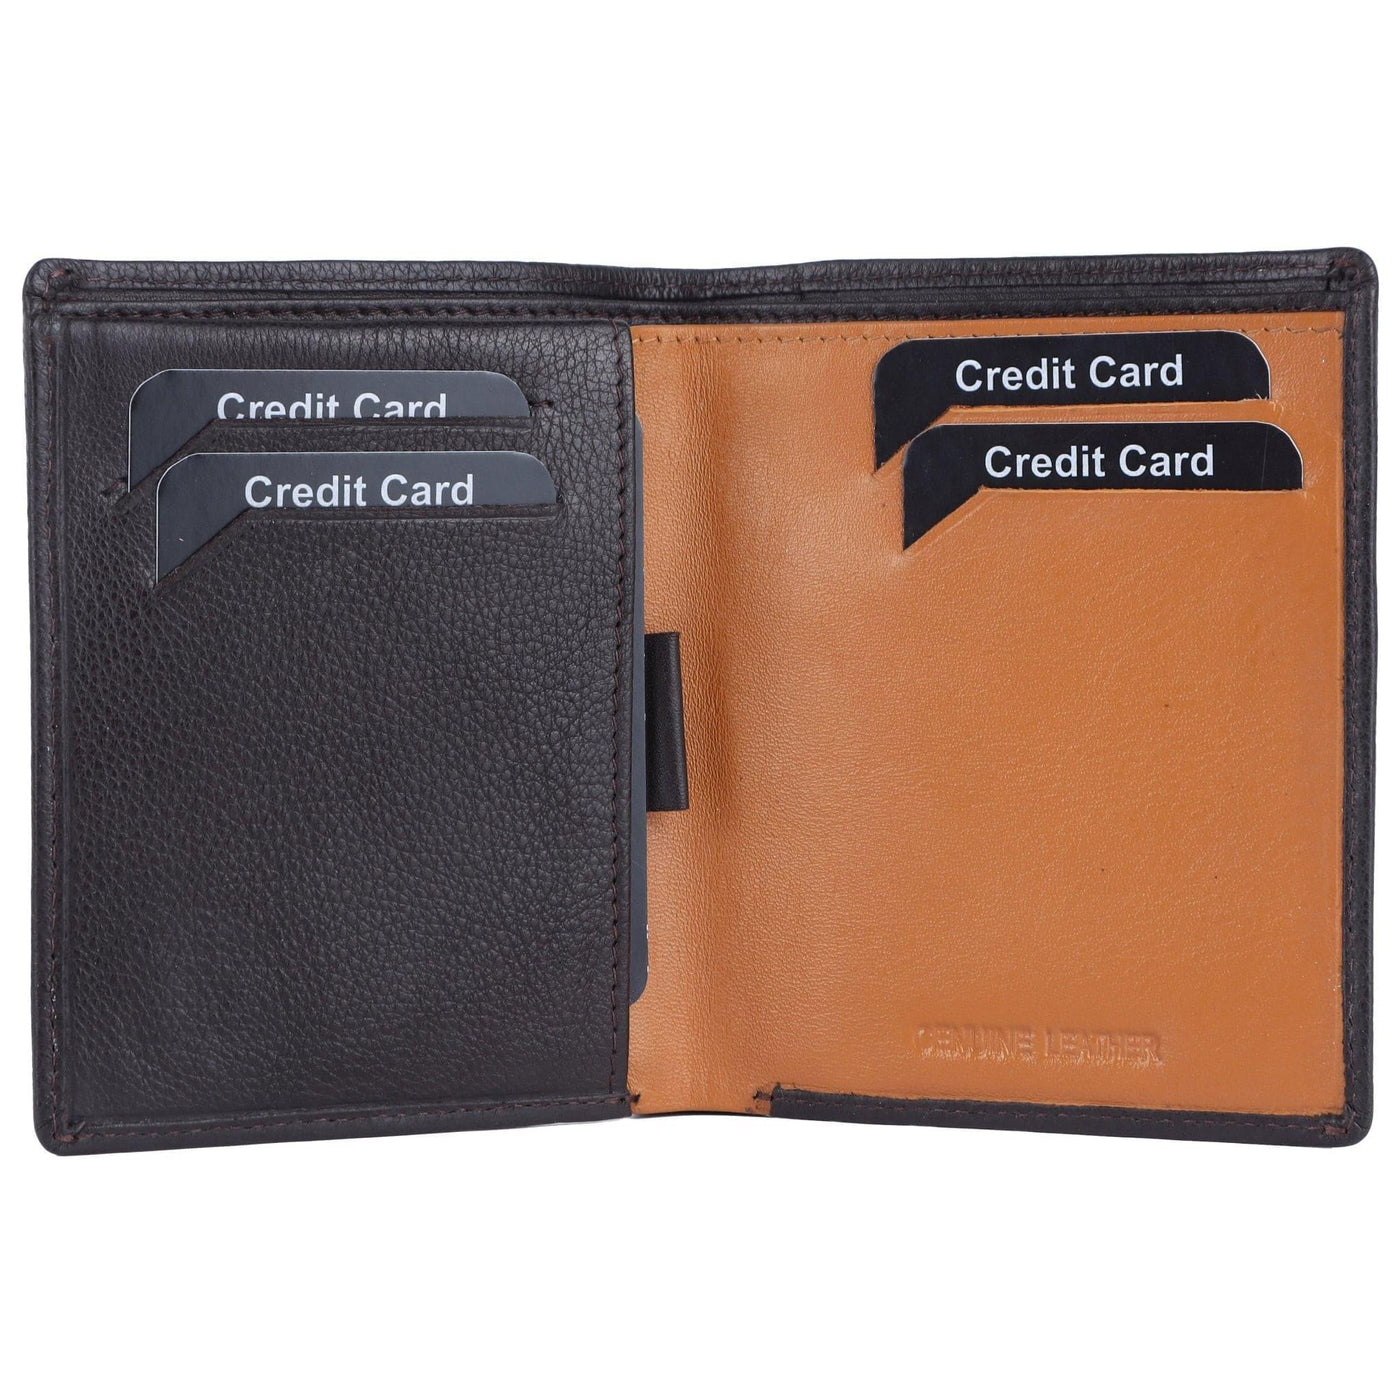 Leather RFID Blocking Bifold Black Wallet